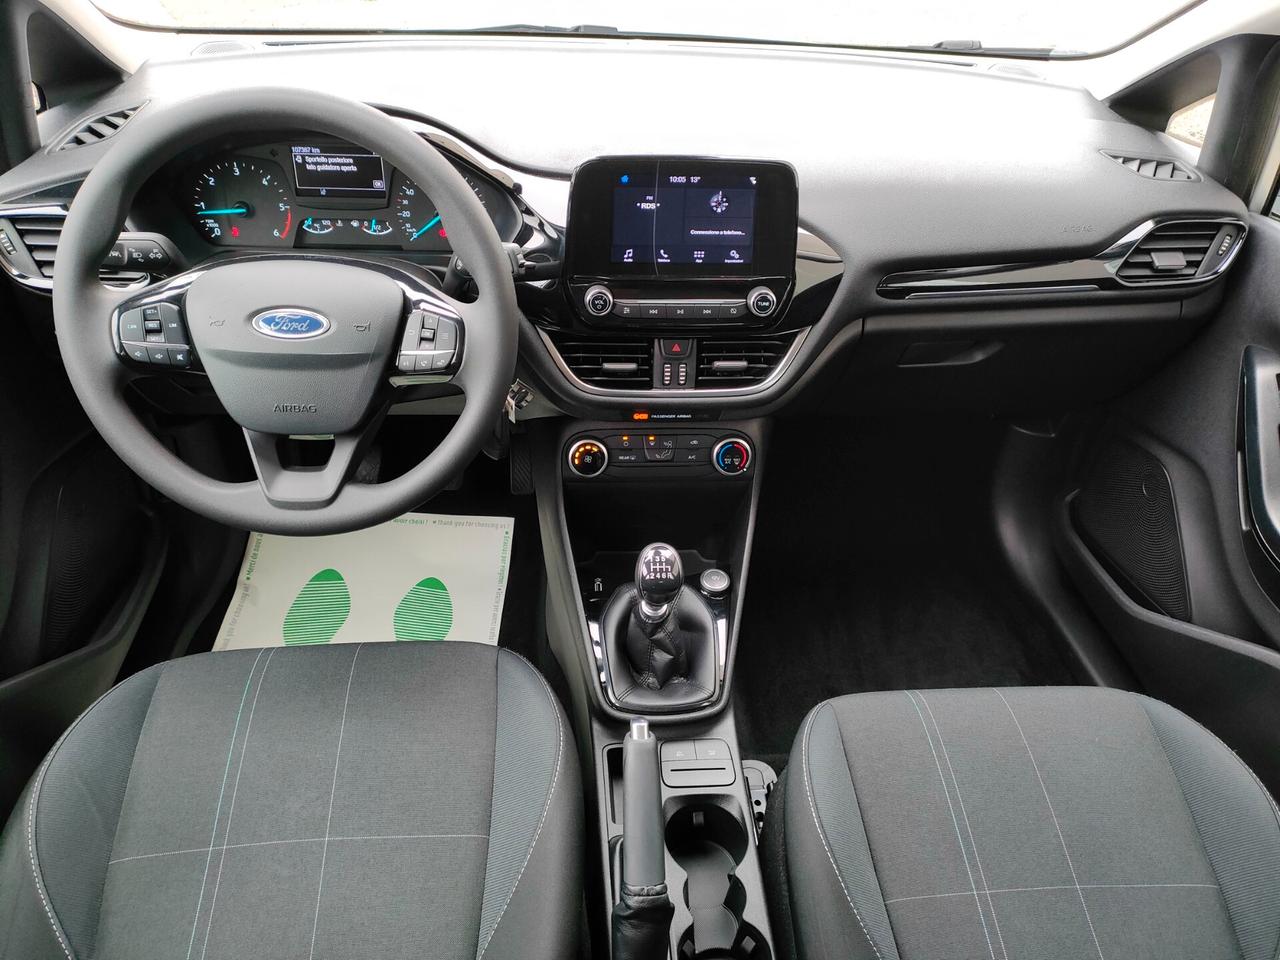 Ford Fiesta 1.5 TDCi 5 porte Plus PER NEOPATENTATI